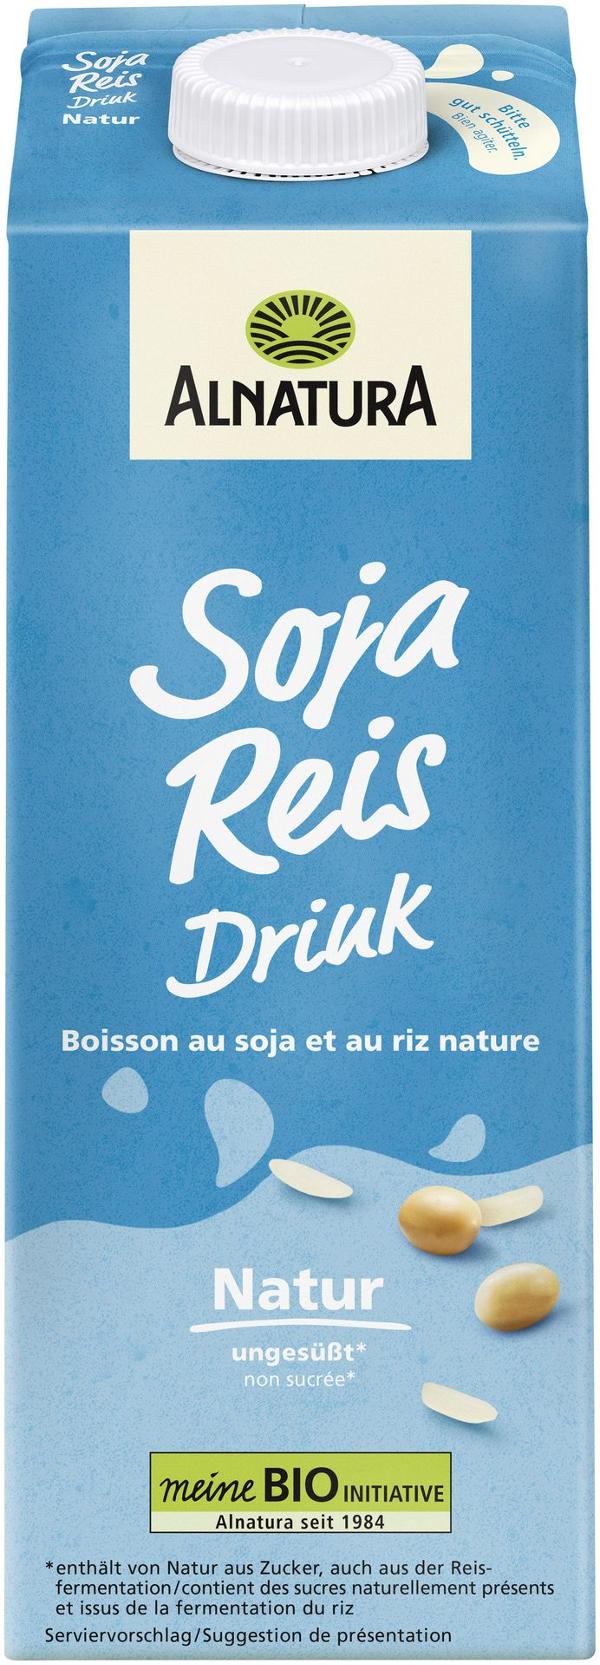 Produktfoto zu Soja Reis Drink Natur 1 l Alnatura